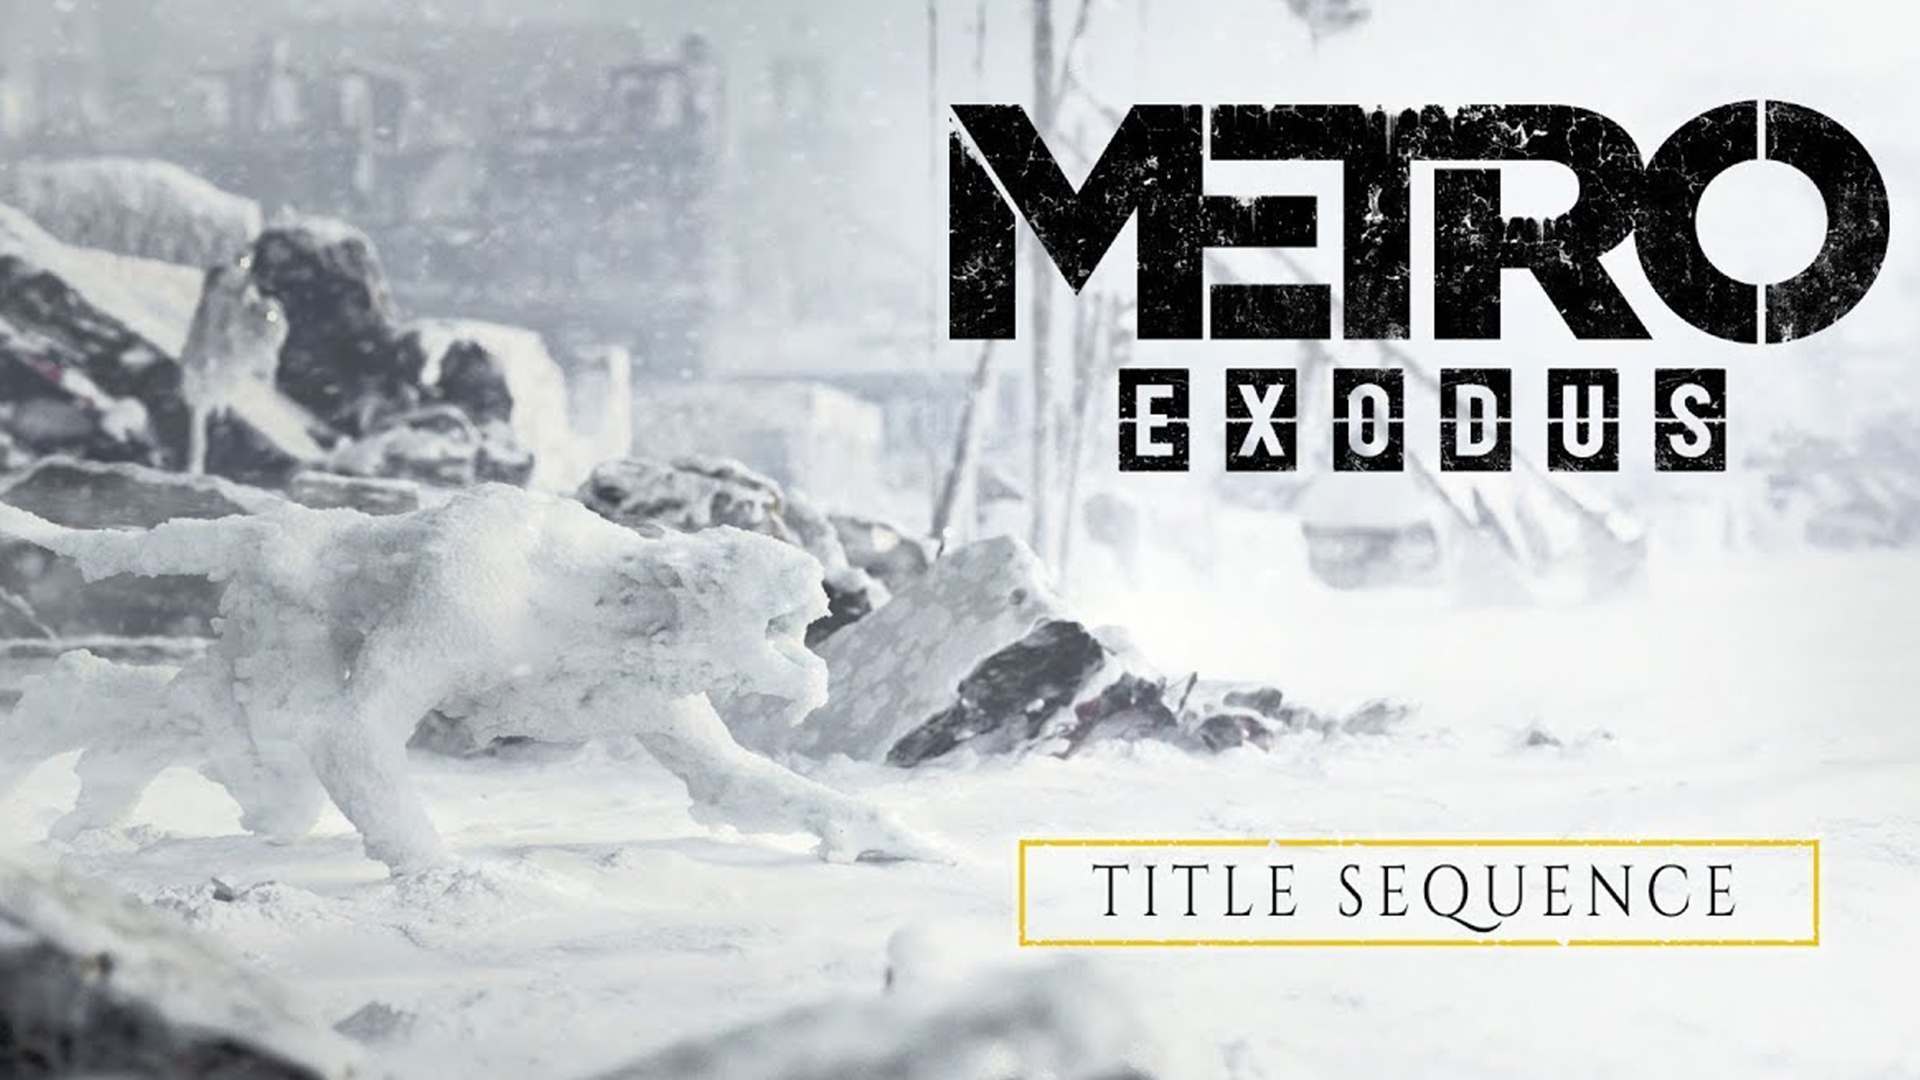 Metro Exodus früher fertig als erwartet und geniale Titel Sequence